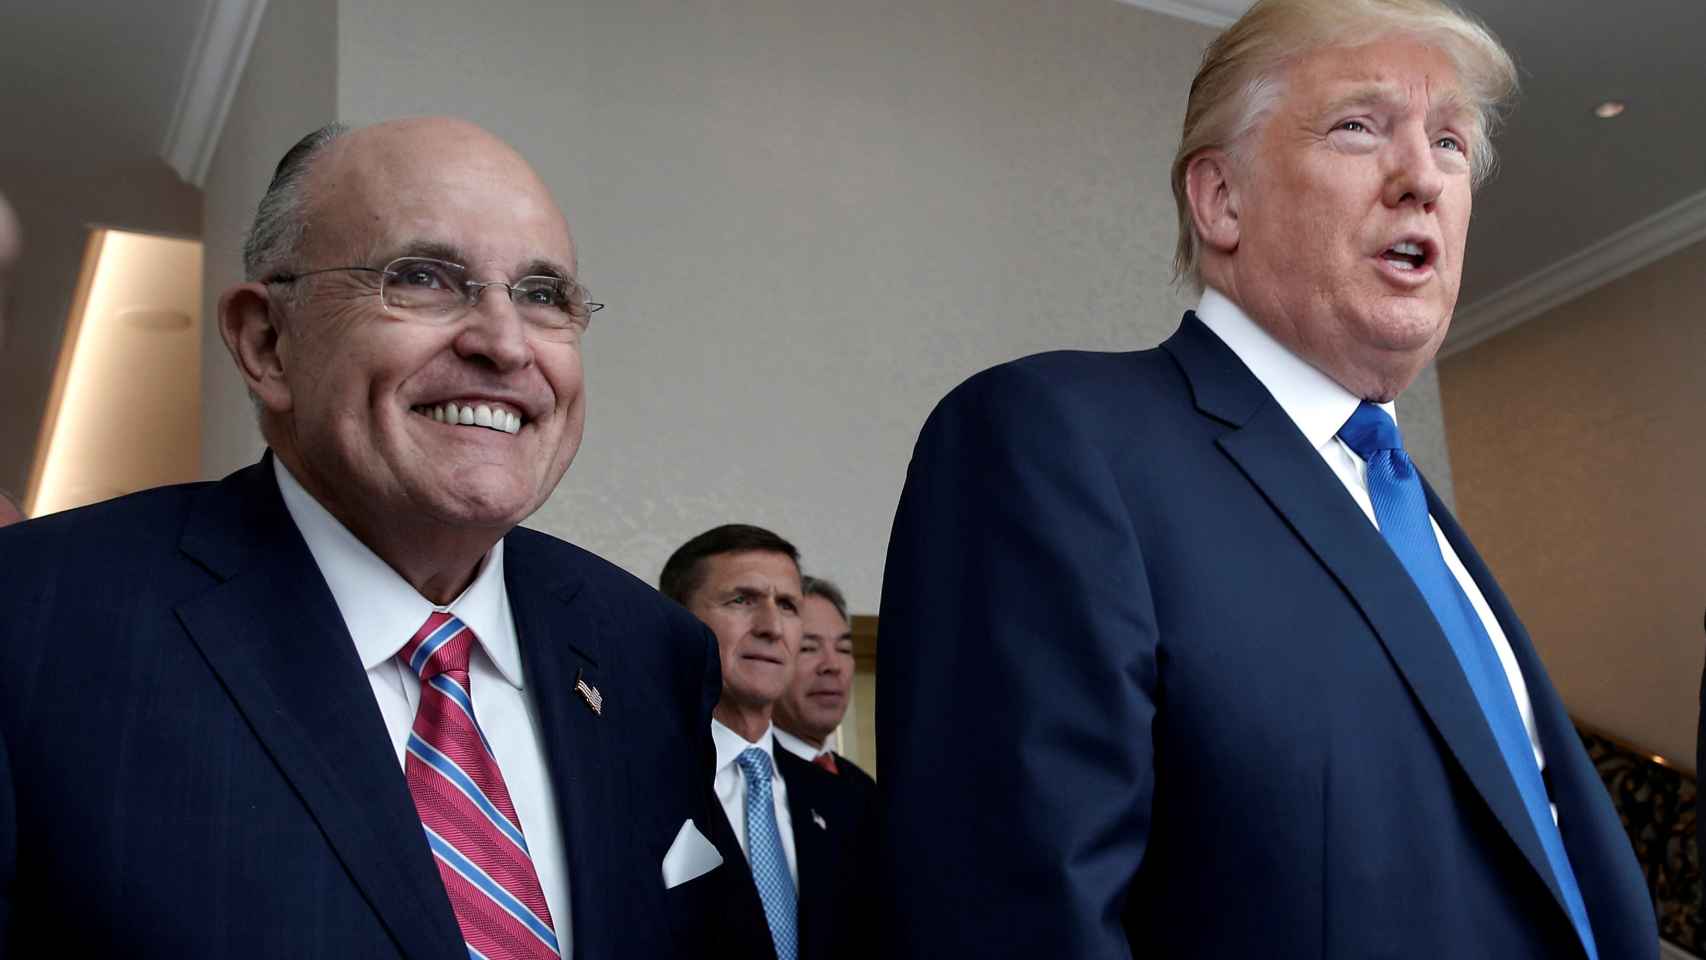 El abogado Rudy Giuliani junto a Donald Trump.